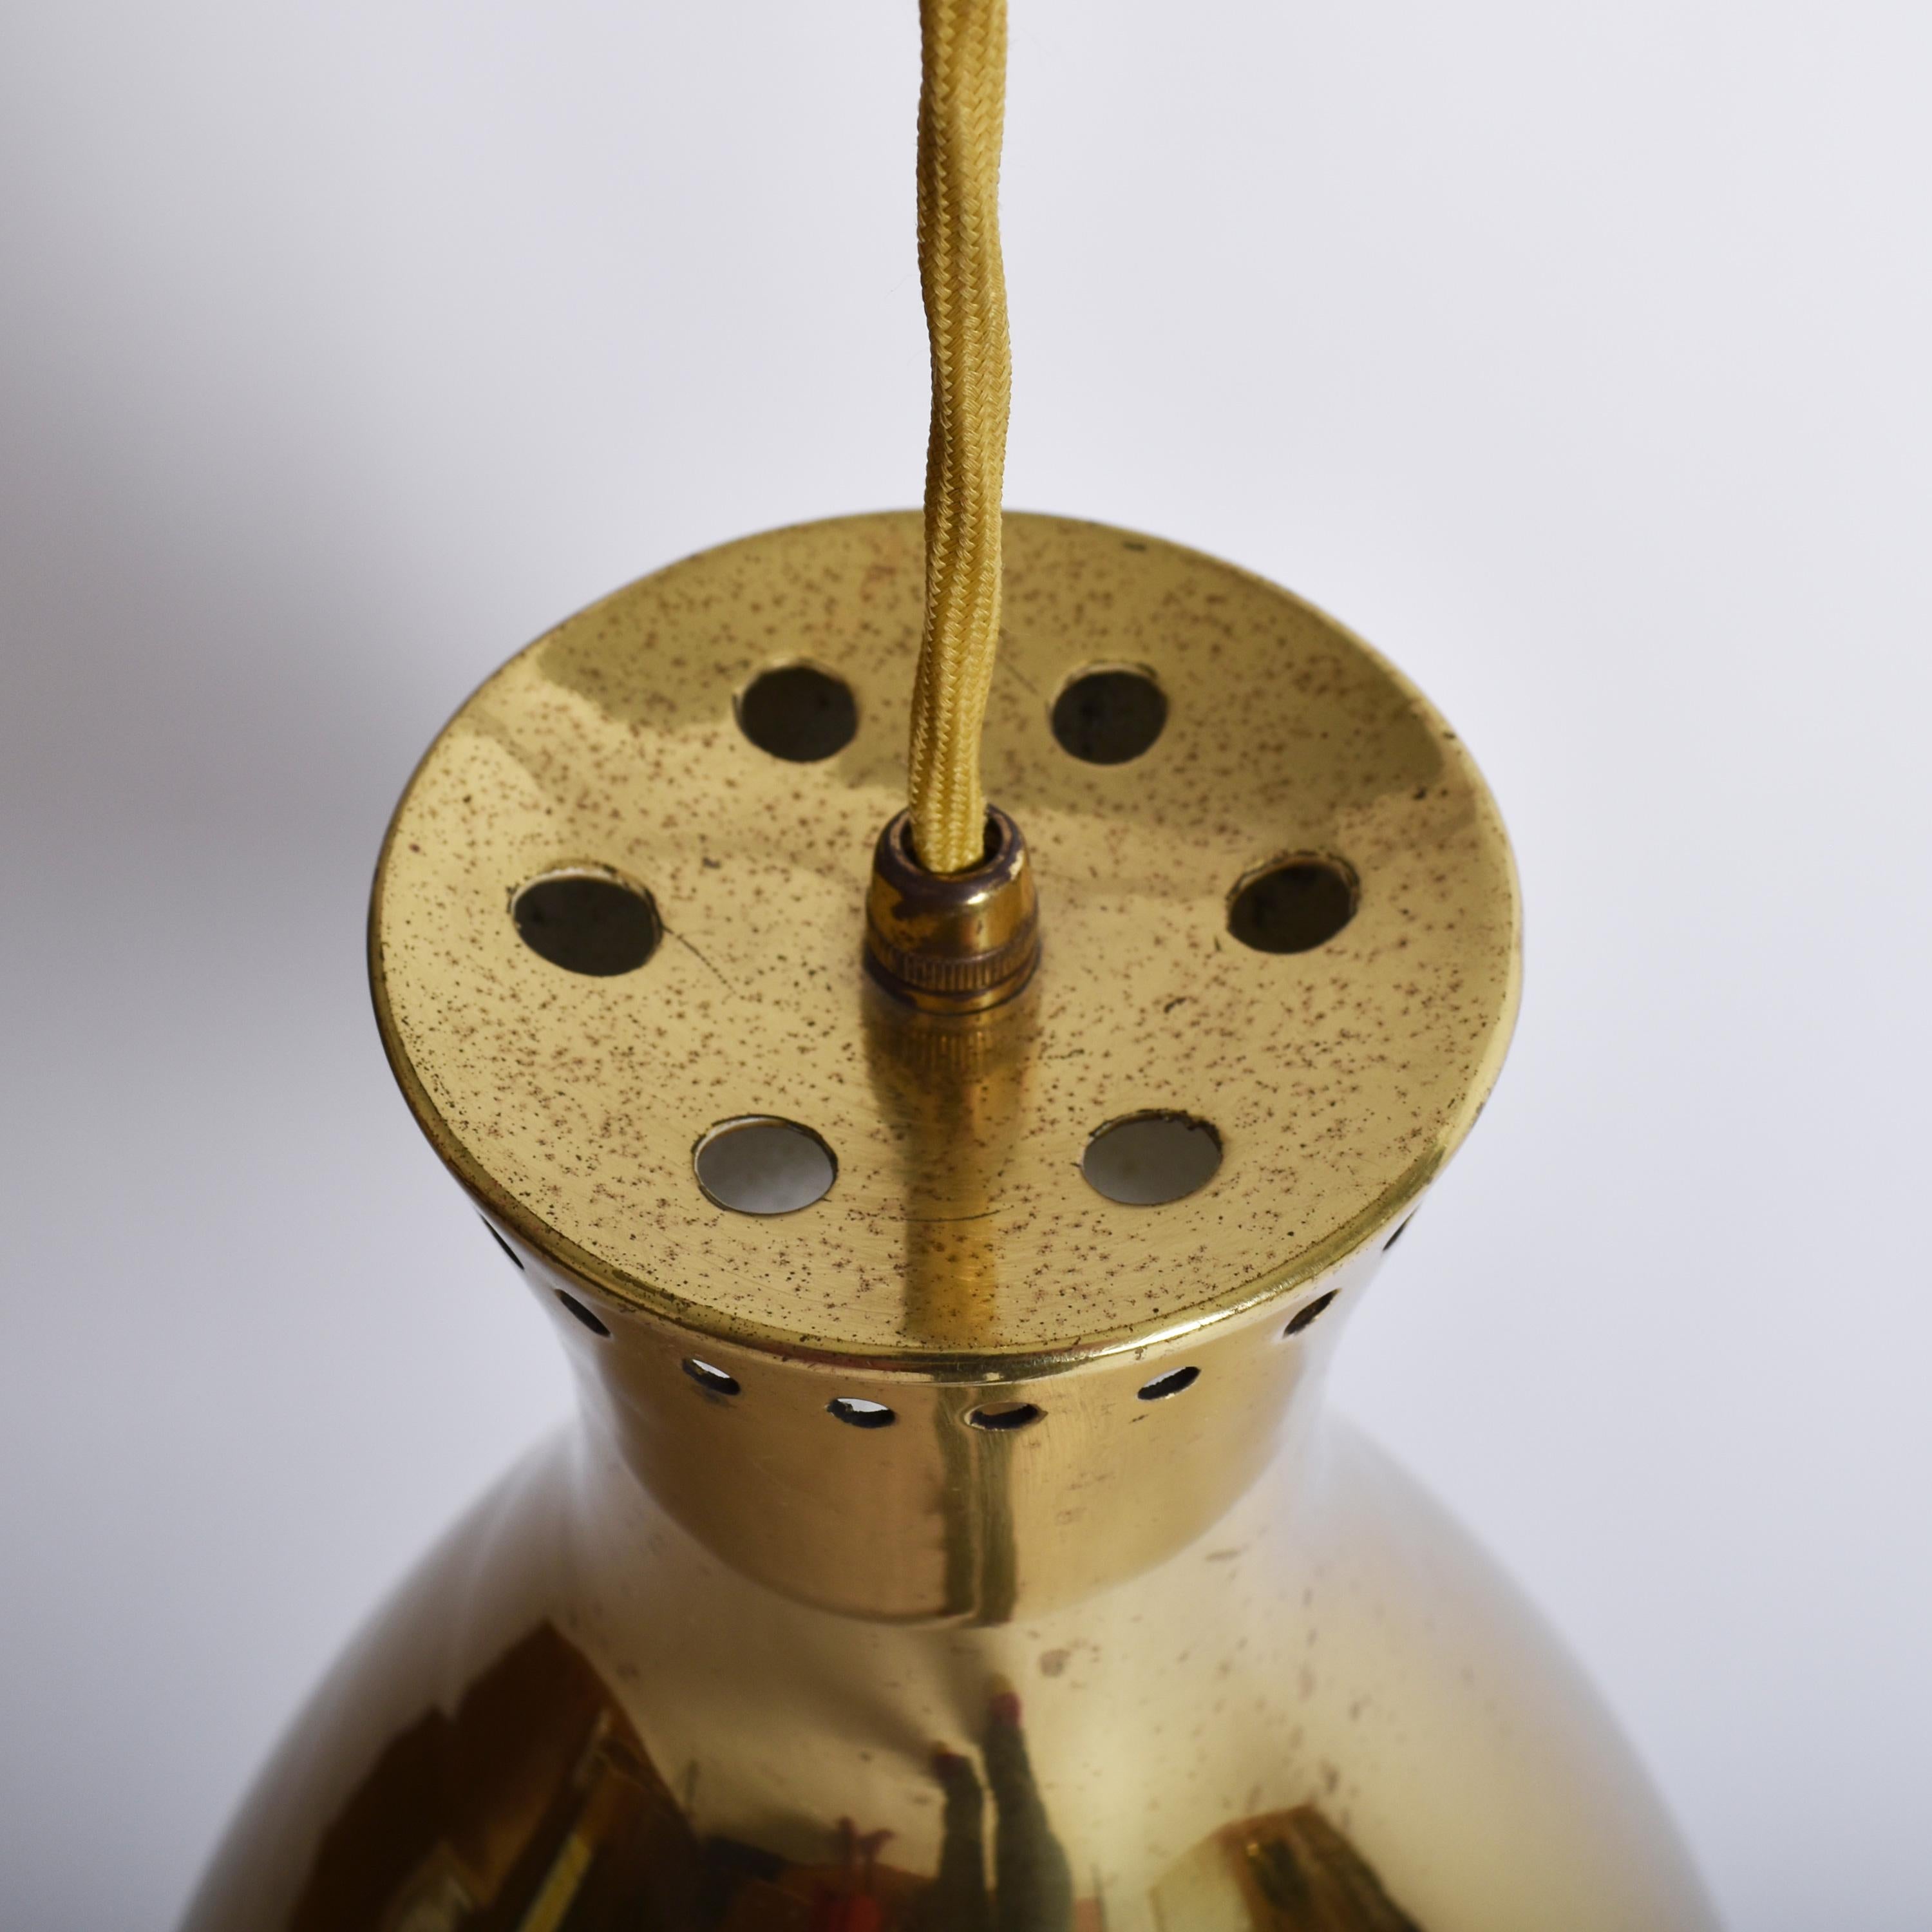 Mid-Century Modern Brass Pendant Lamp by Vereinigte Werkstätten 1960s Germany For Sale 2